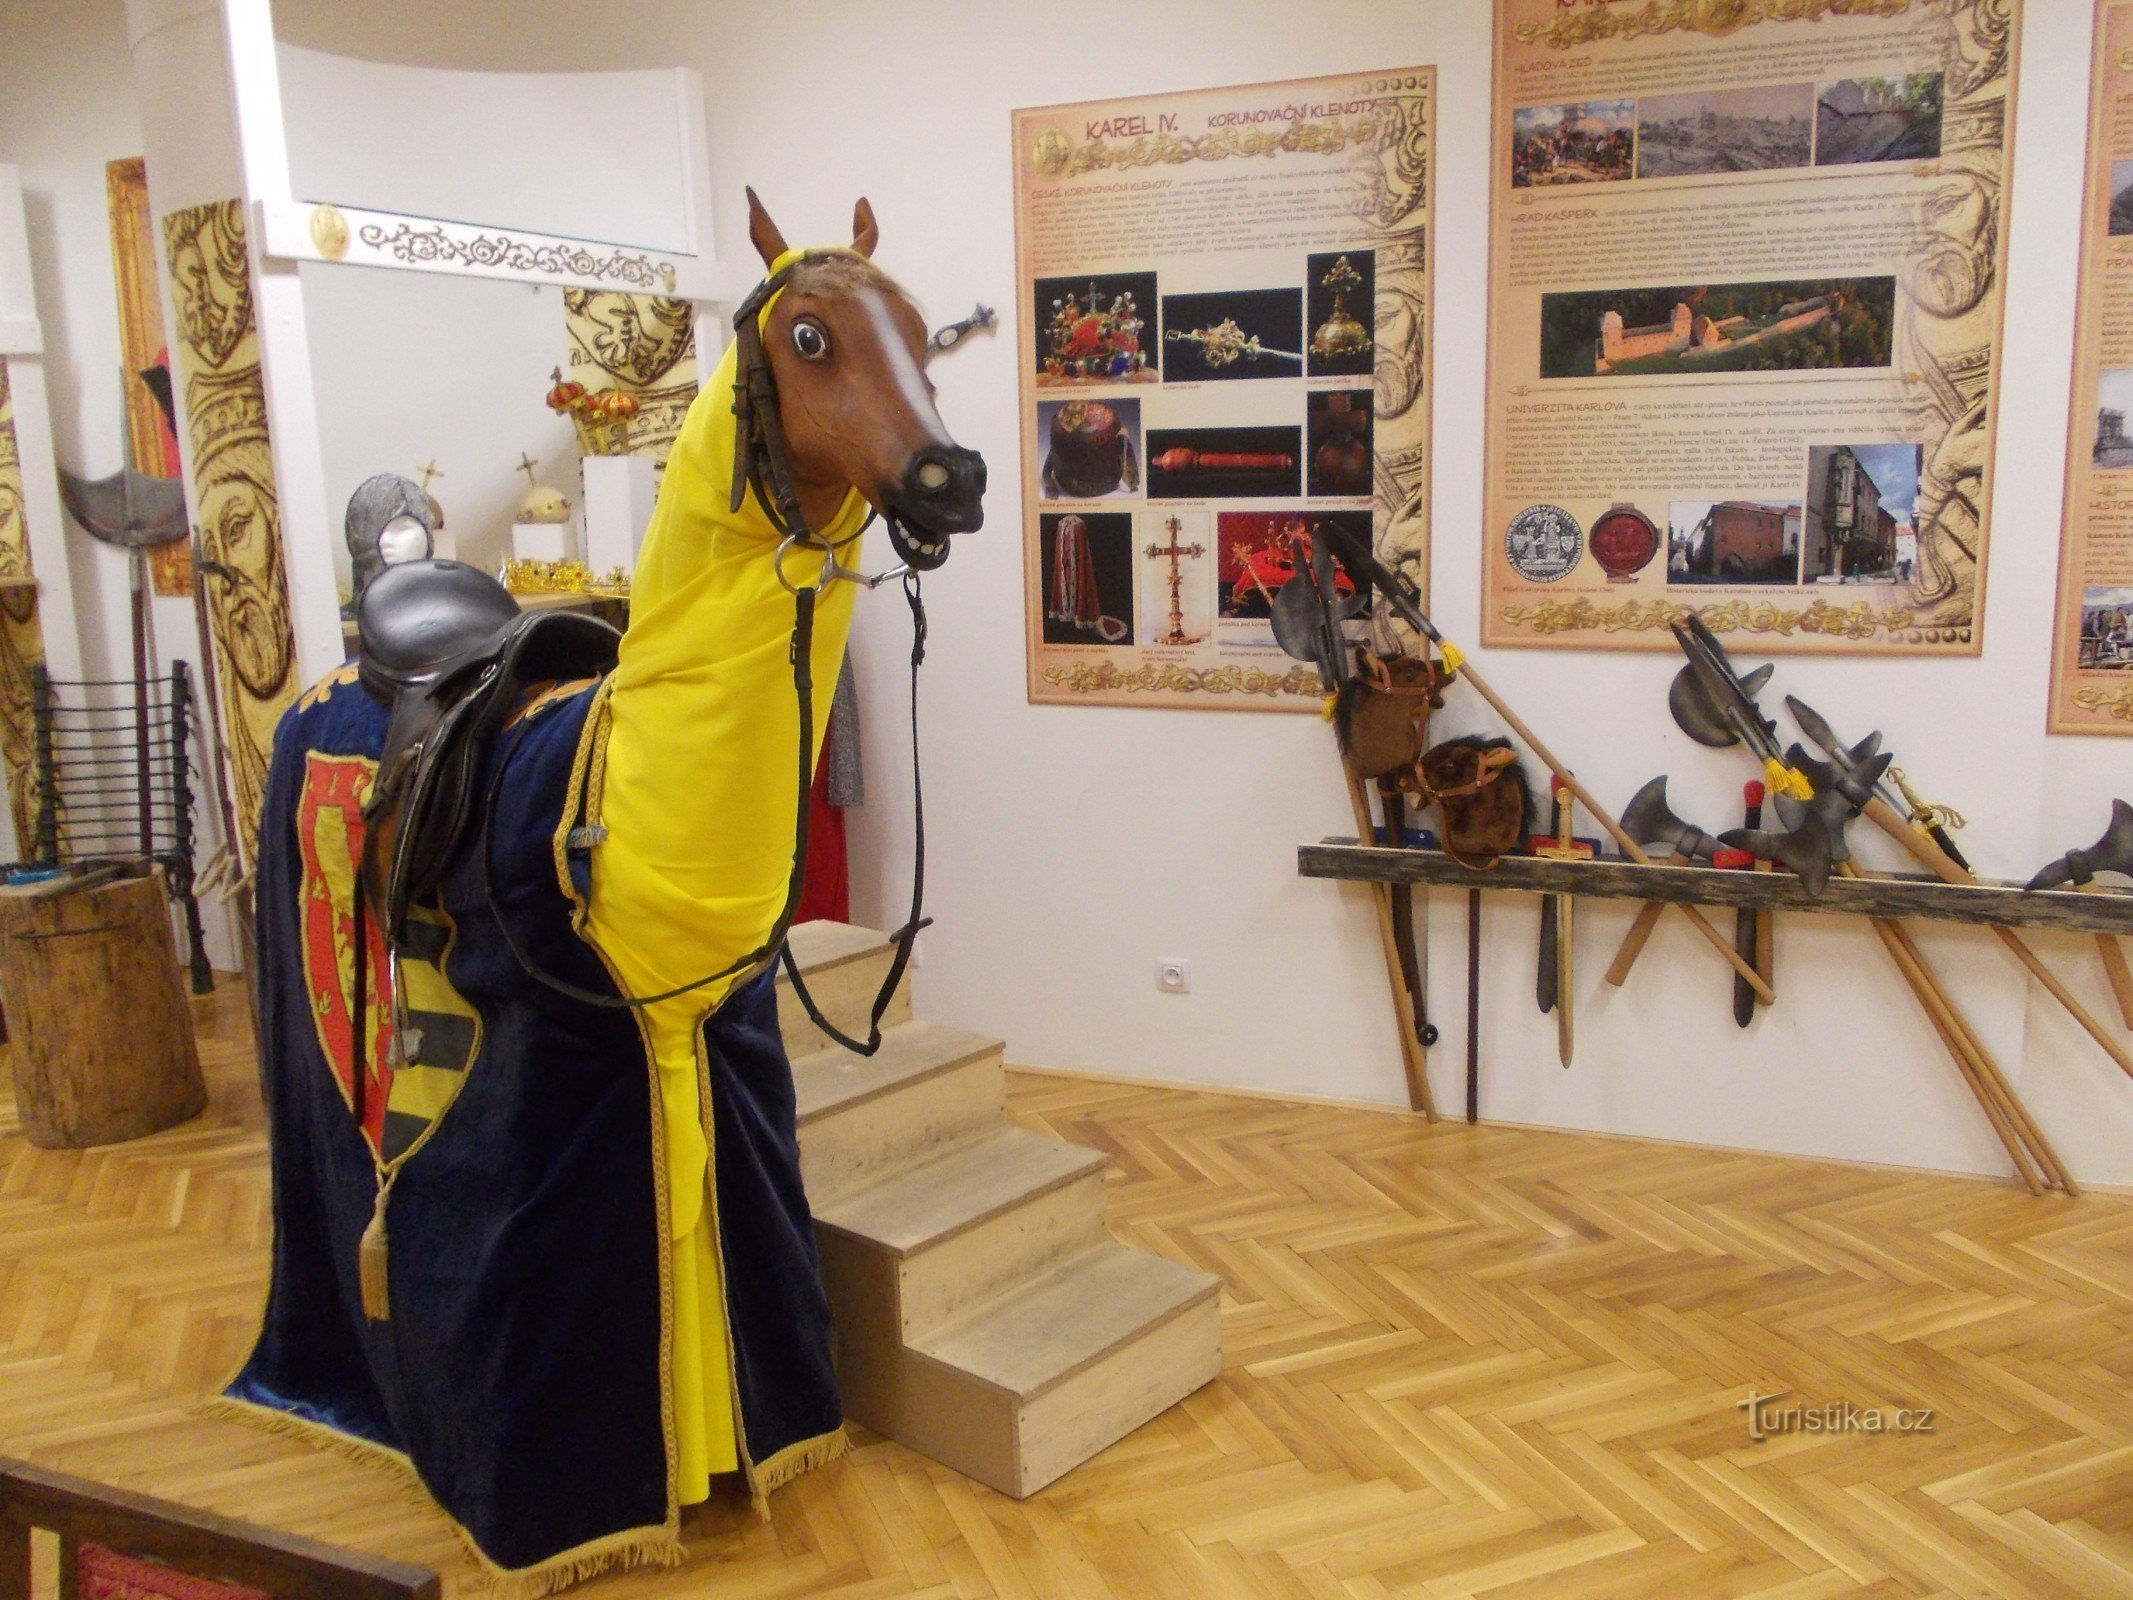 mahdollisuus ottaa valokuva hevosen selässä antiikkivaatteissa